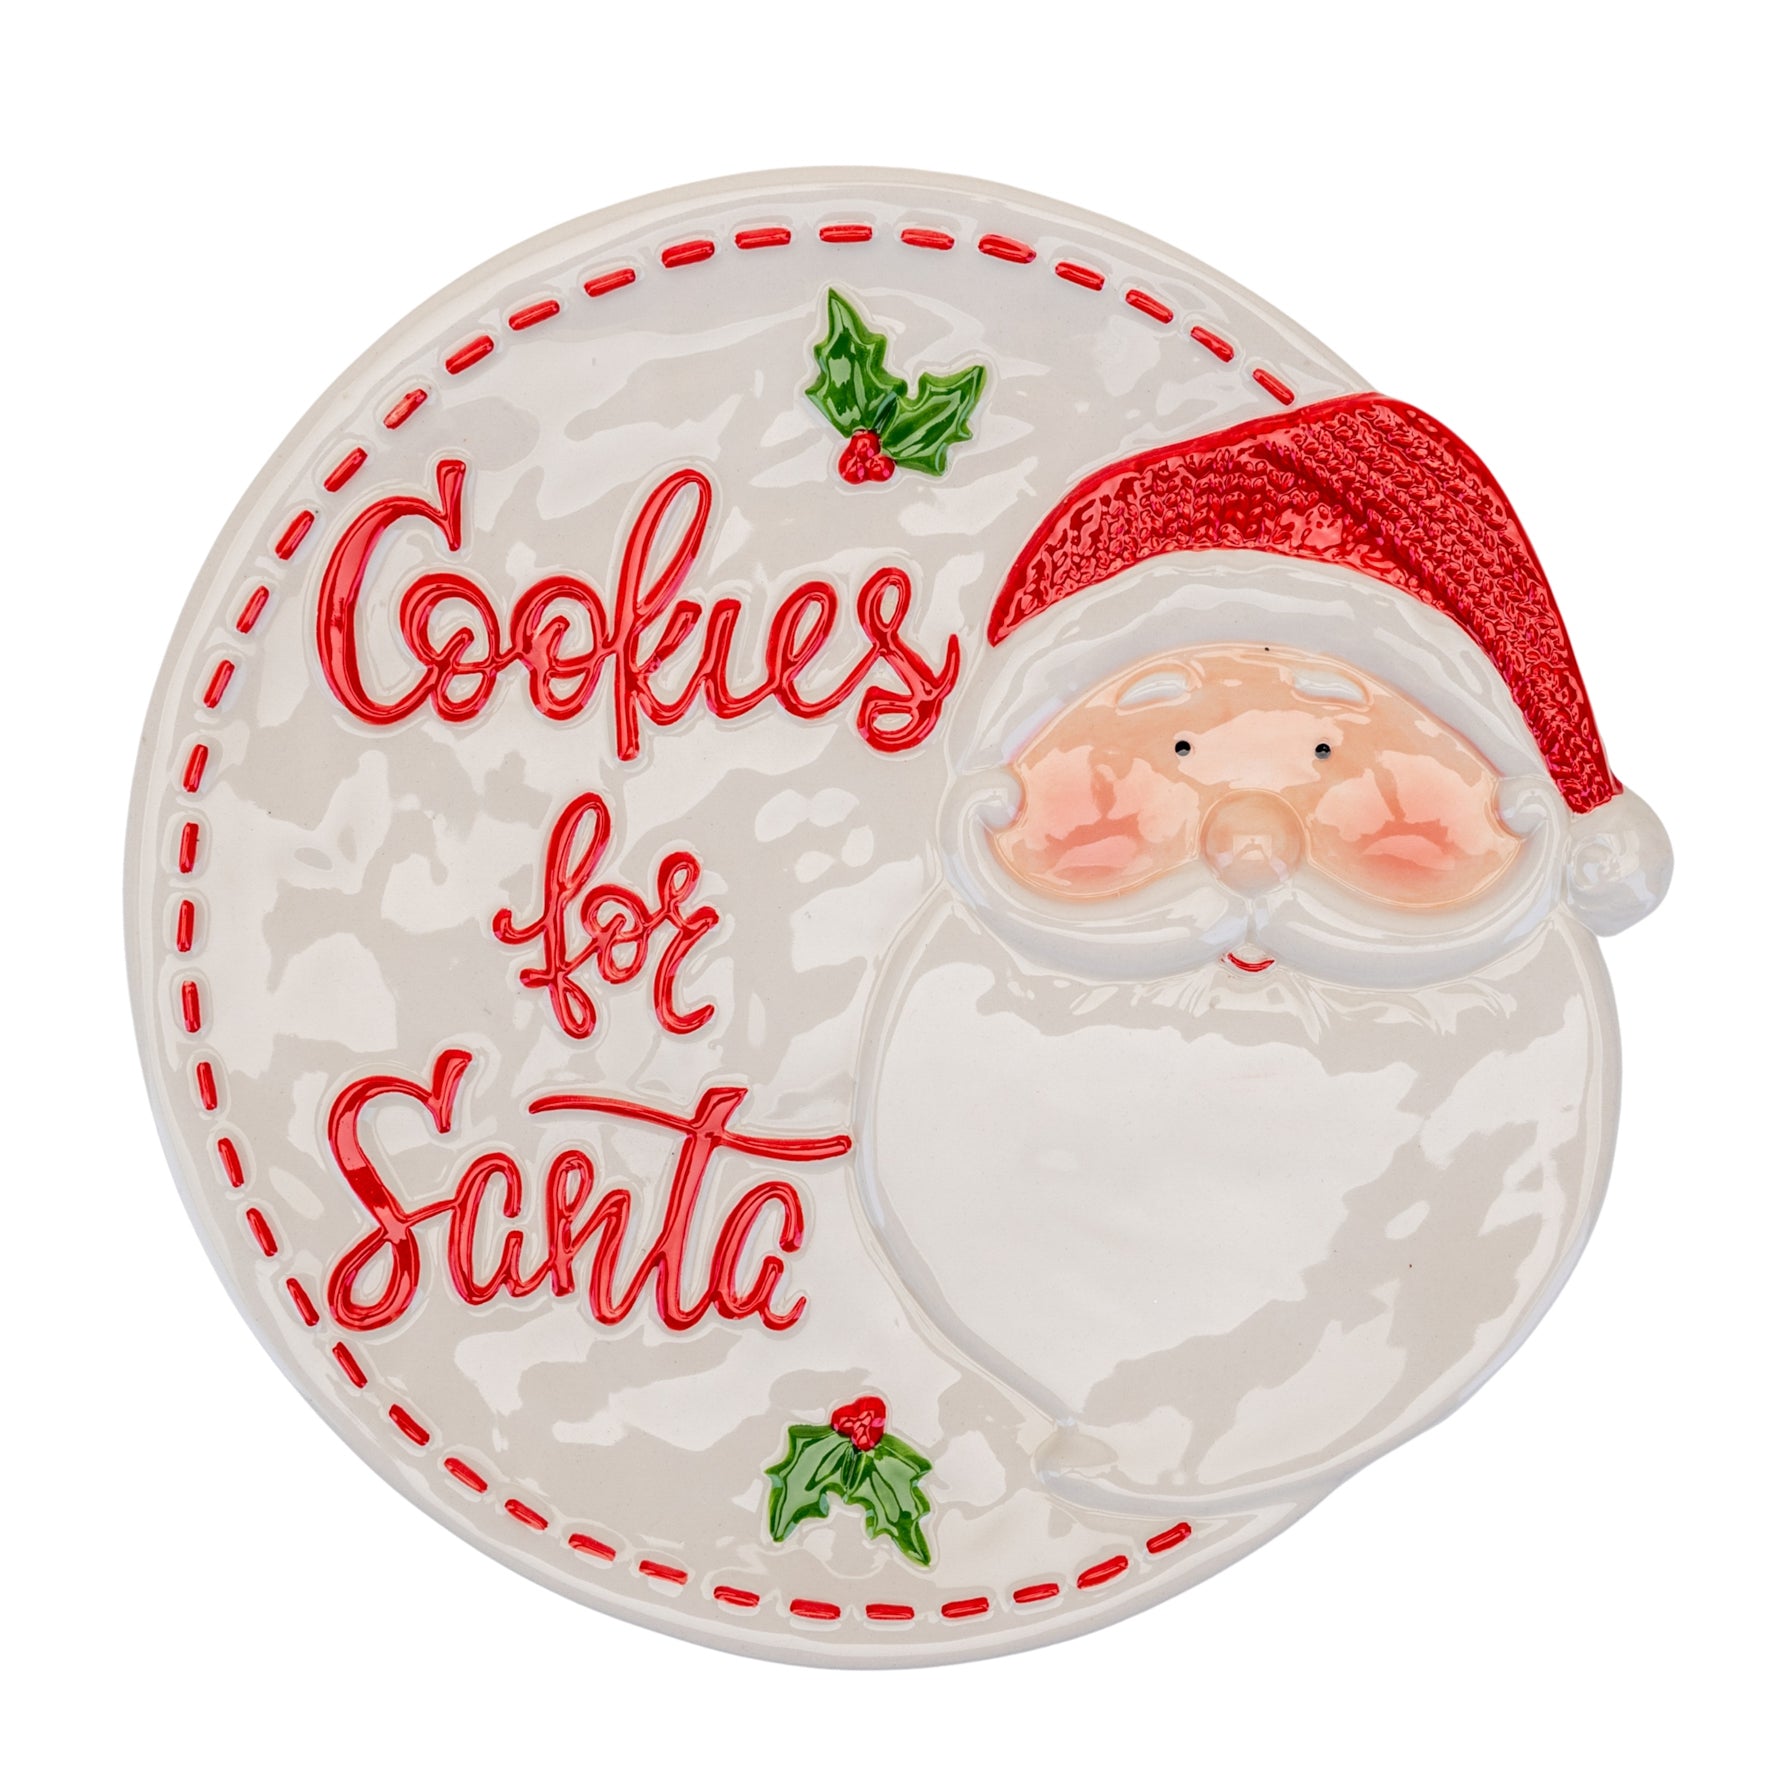 Ceramic Plate - Cookies for Santa